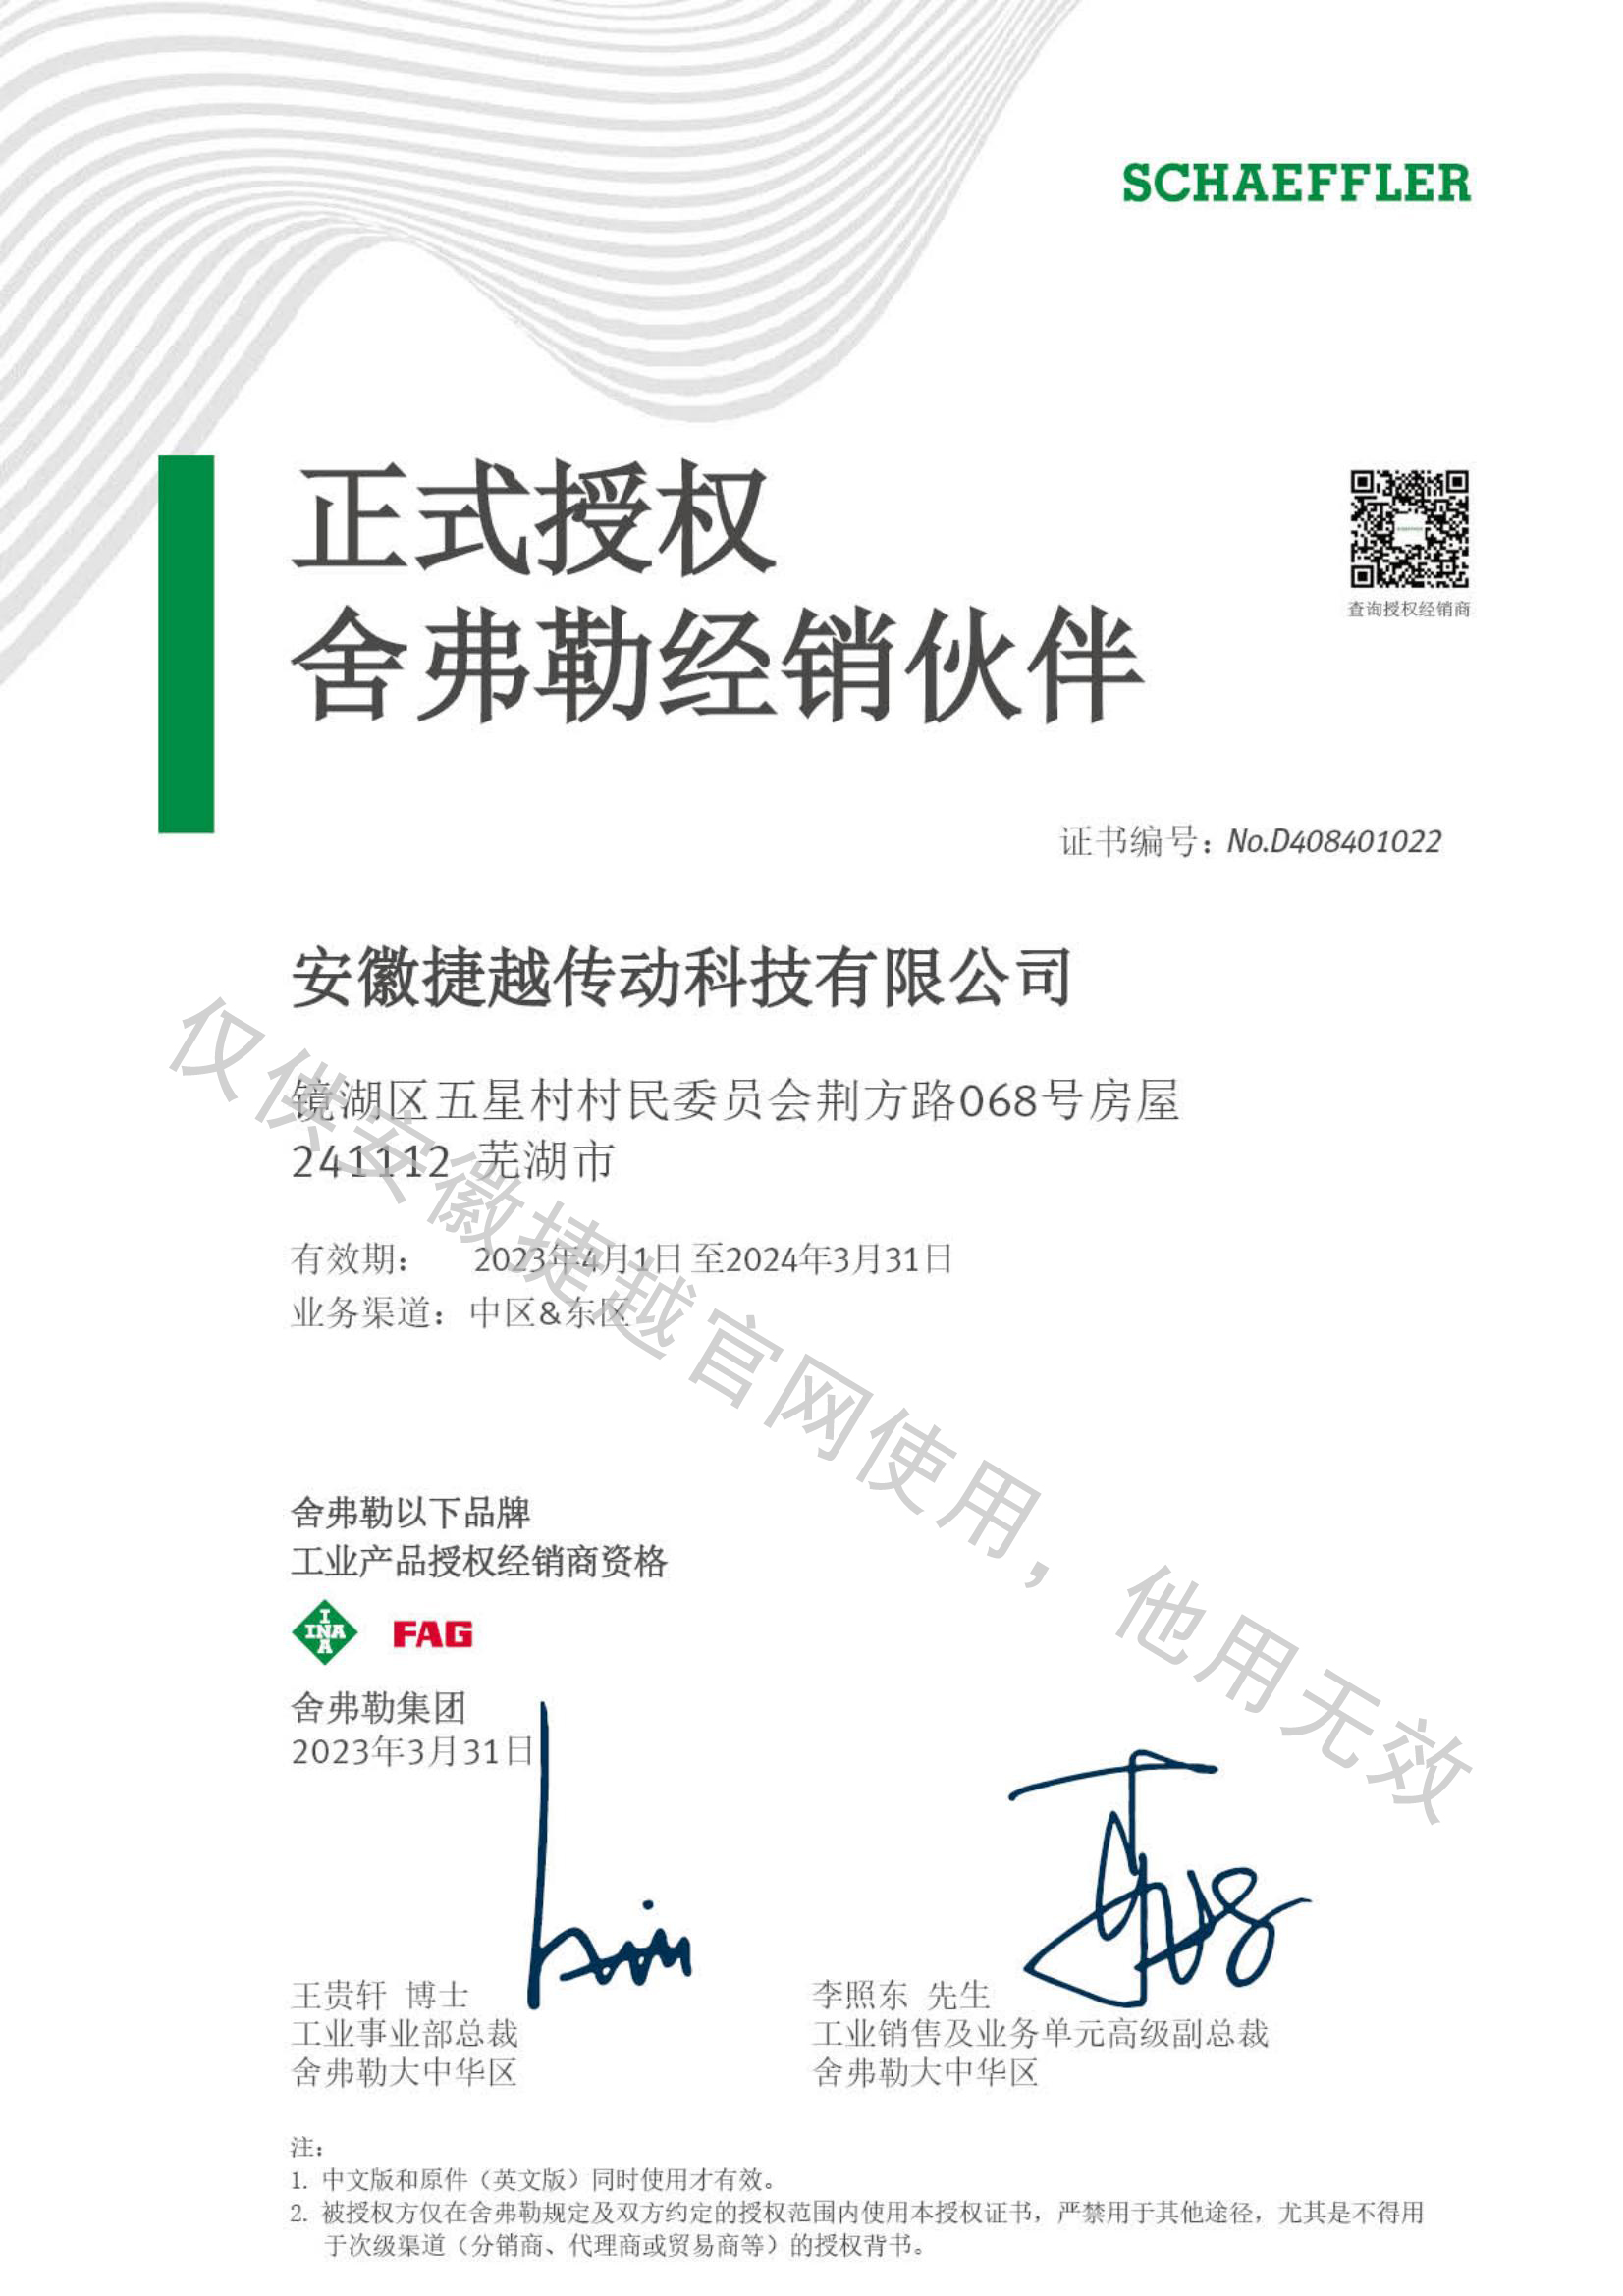 INA&FAG 2023年授权证书中文版